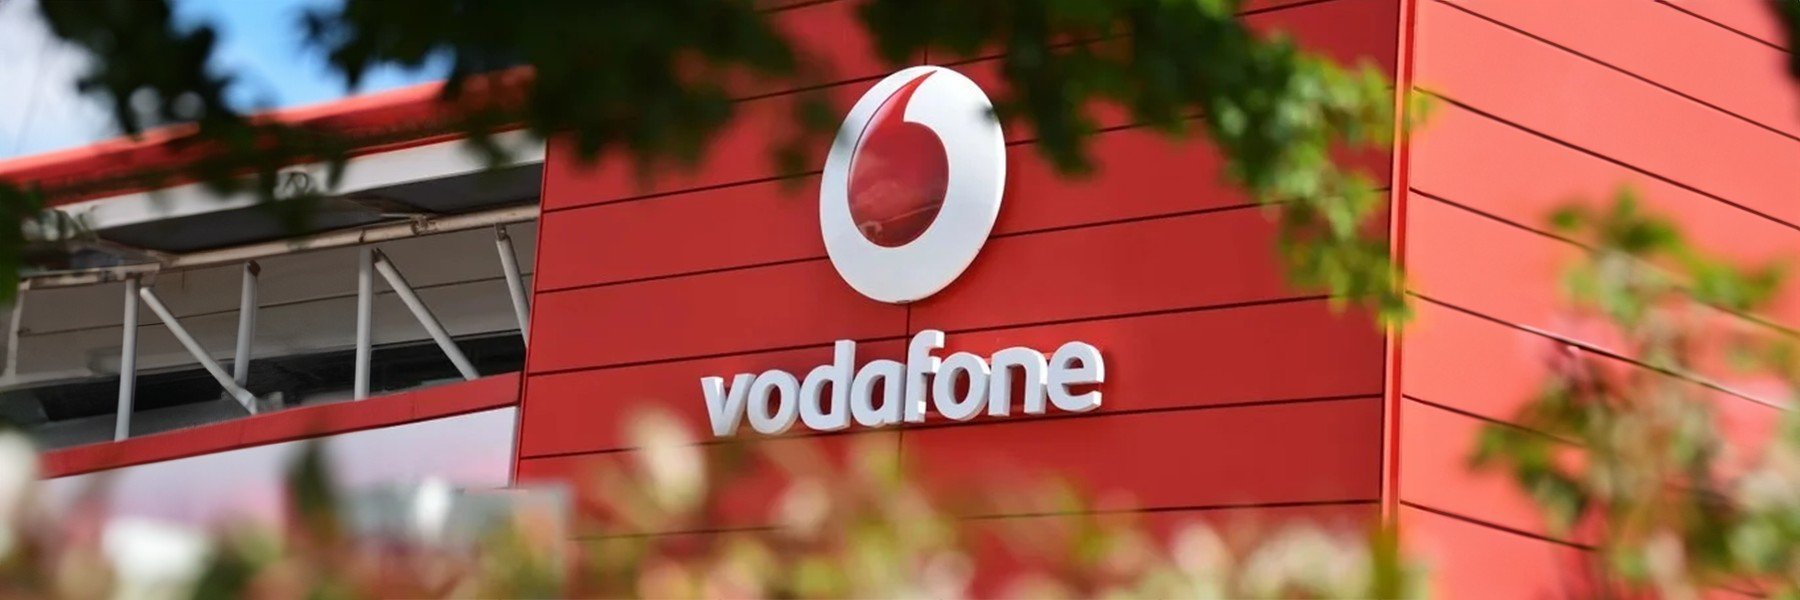 Vodafone Italia annonce de nouvelles augmentations de prix : certaines offres de téléphonie fixe remodelées